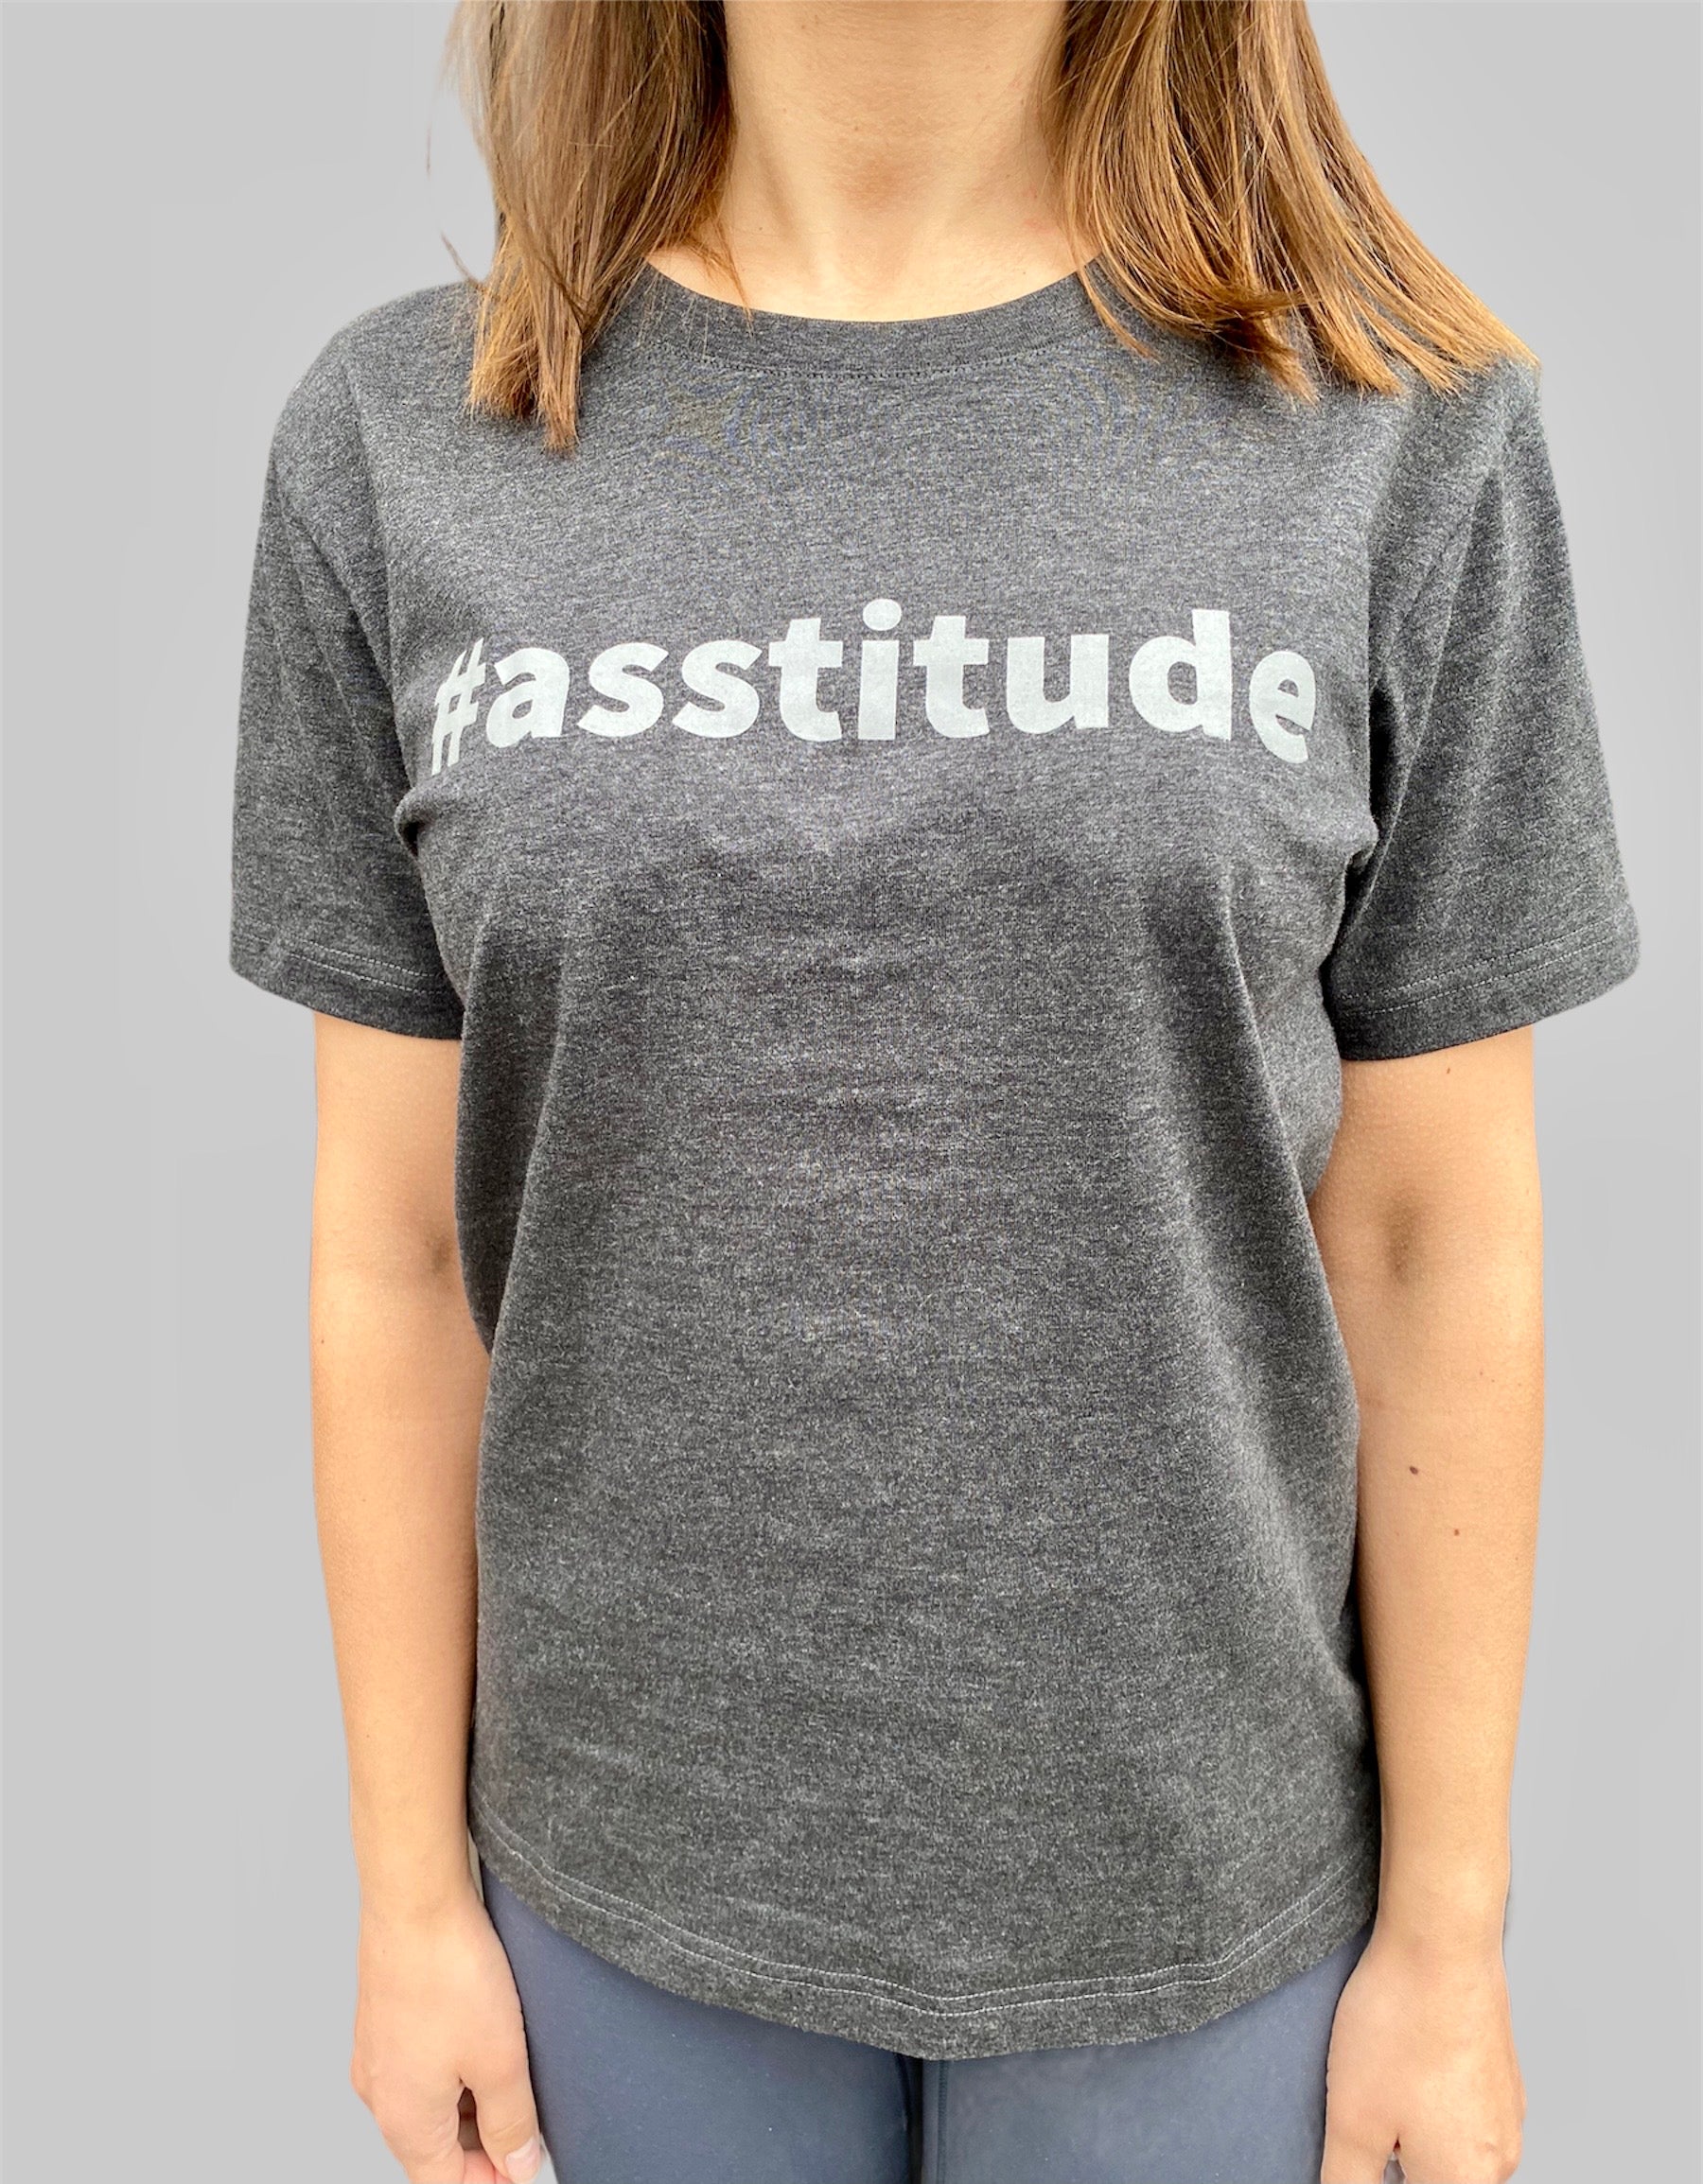 Asstitude T-Shirt - Dark Grey